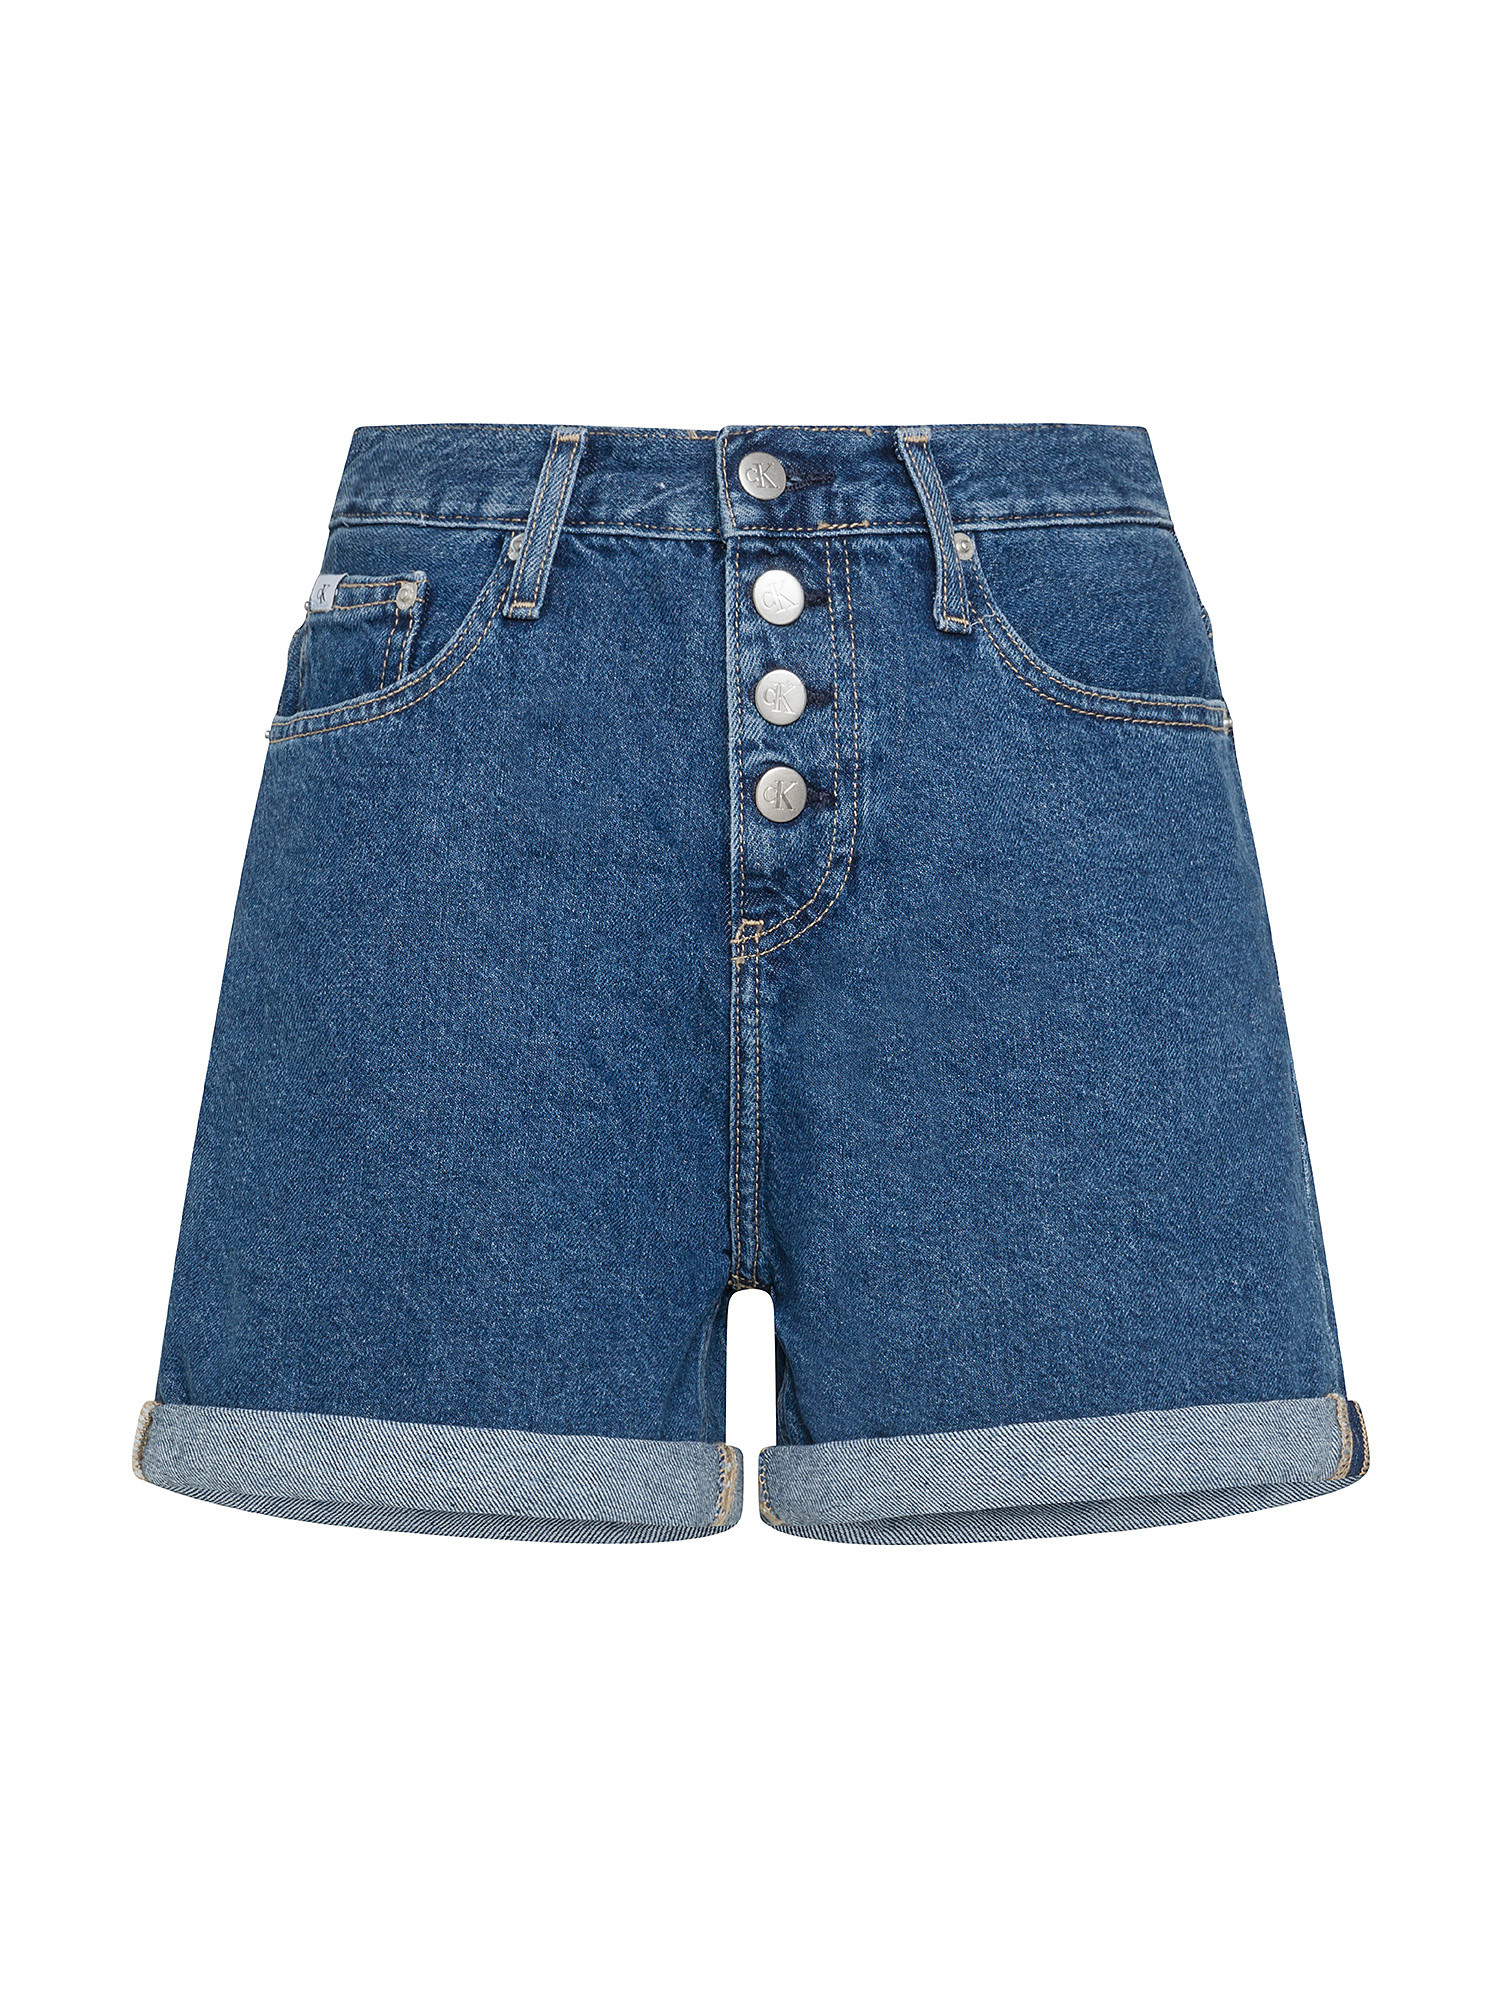 Calvin Klein Jeans - Shorts in denim Mom fit, Denim, large image number 0